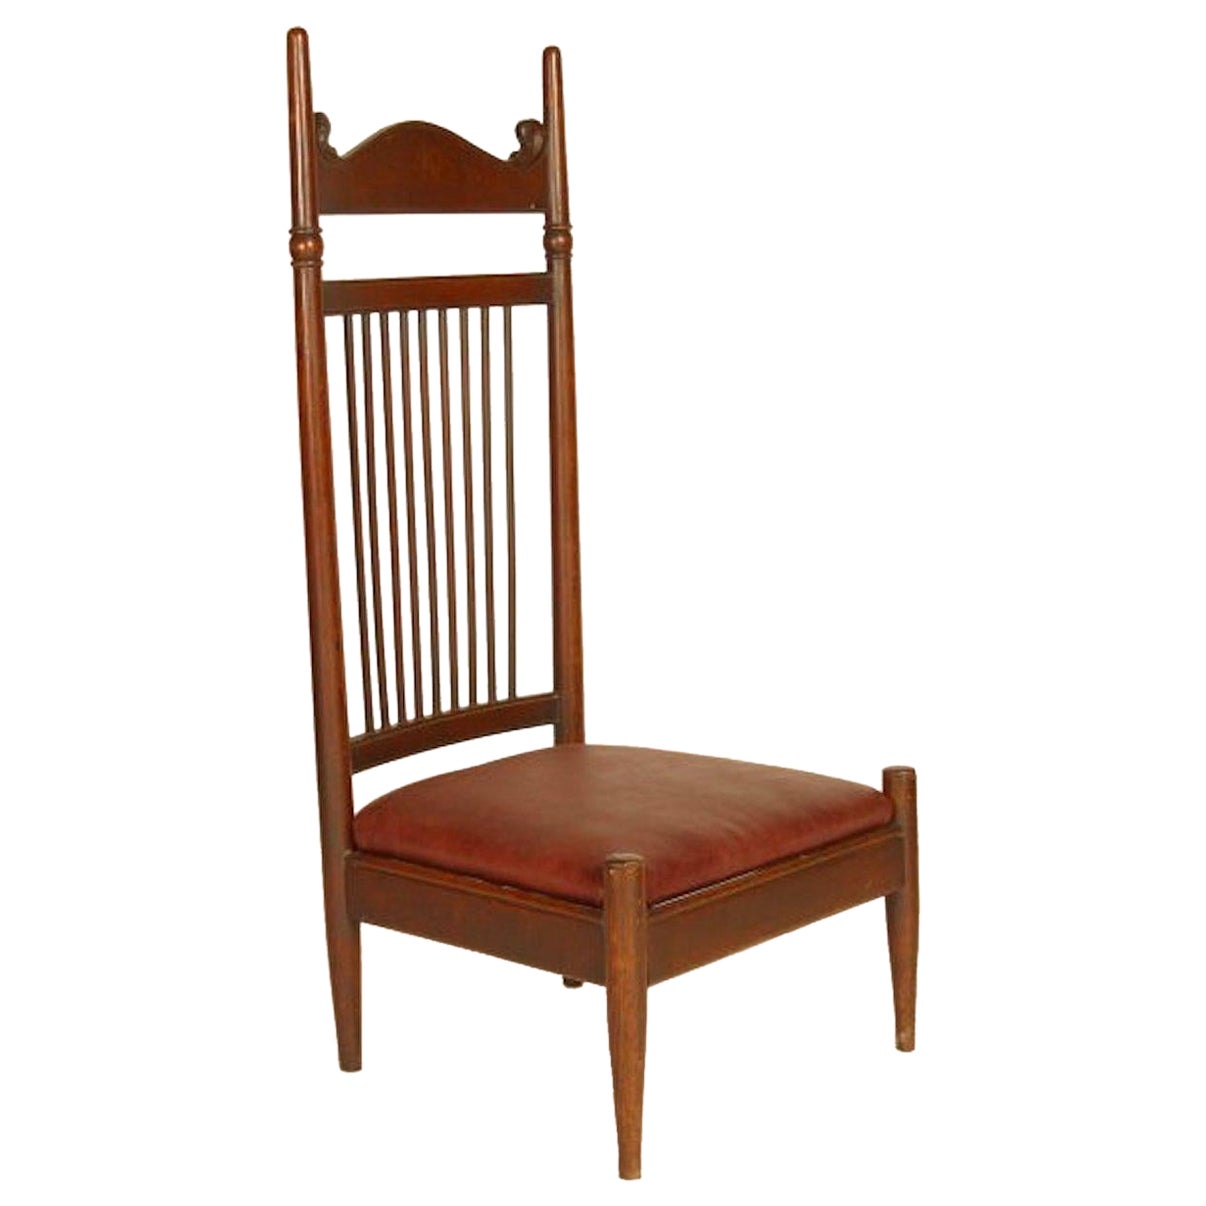 E W Godwin Stil eines Aesthetic Movement Eichenholzstuhls mit hoher Rückenlehne und niedriger Sitzfläche